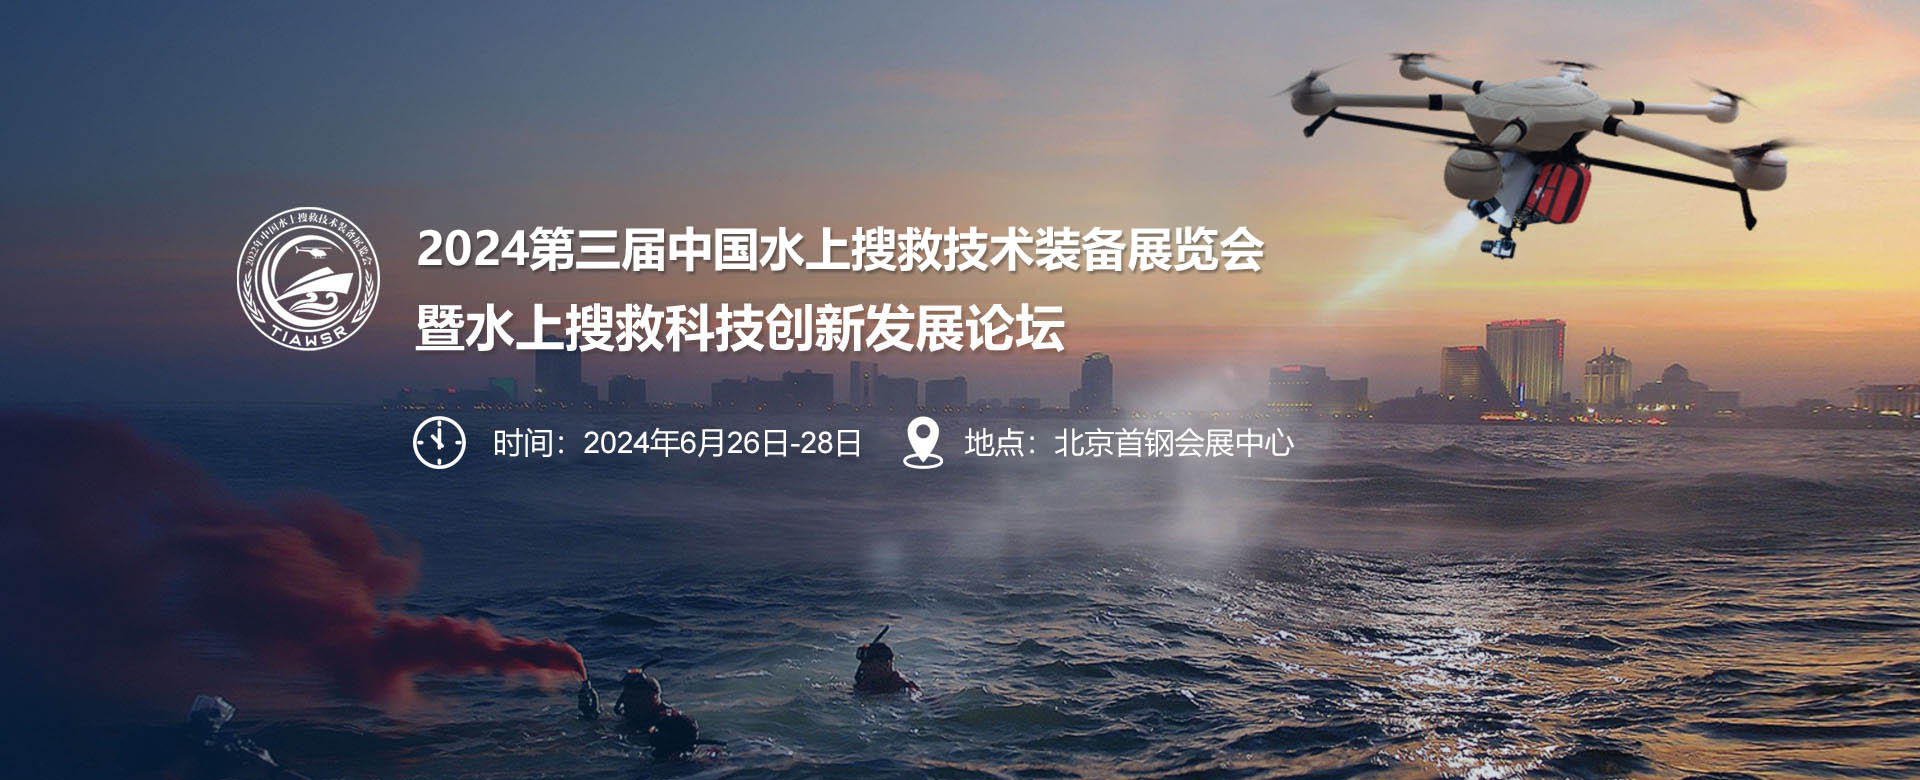 2024中国水上搜救技术装备展将在北京6月召开